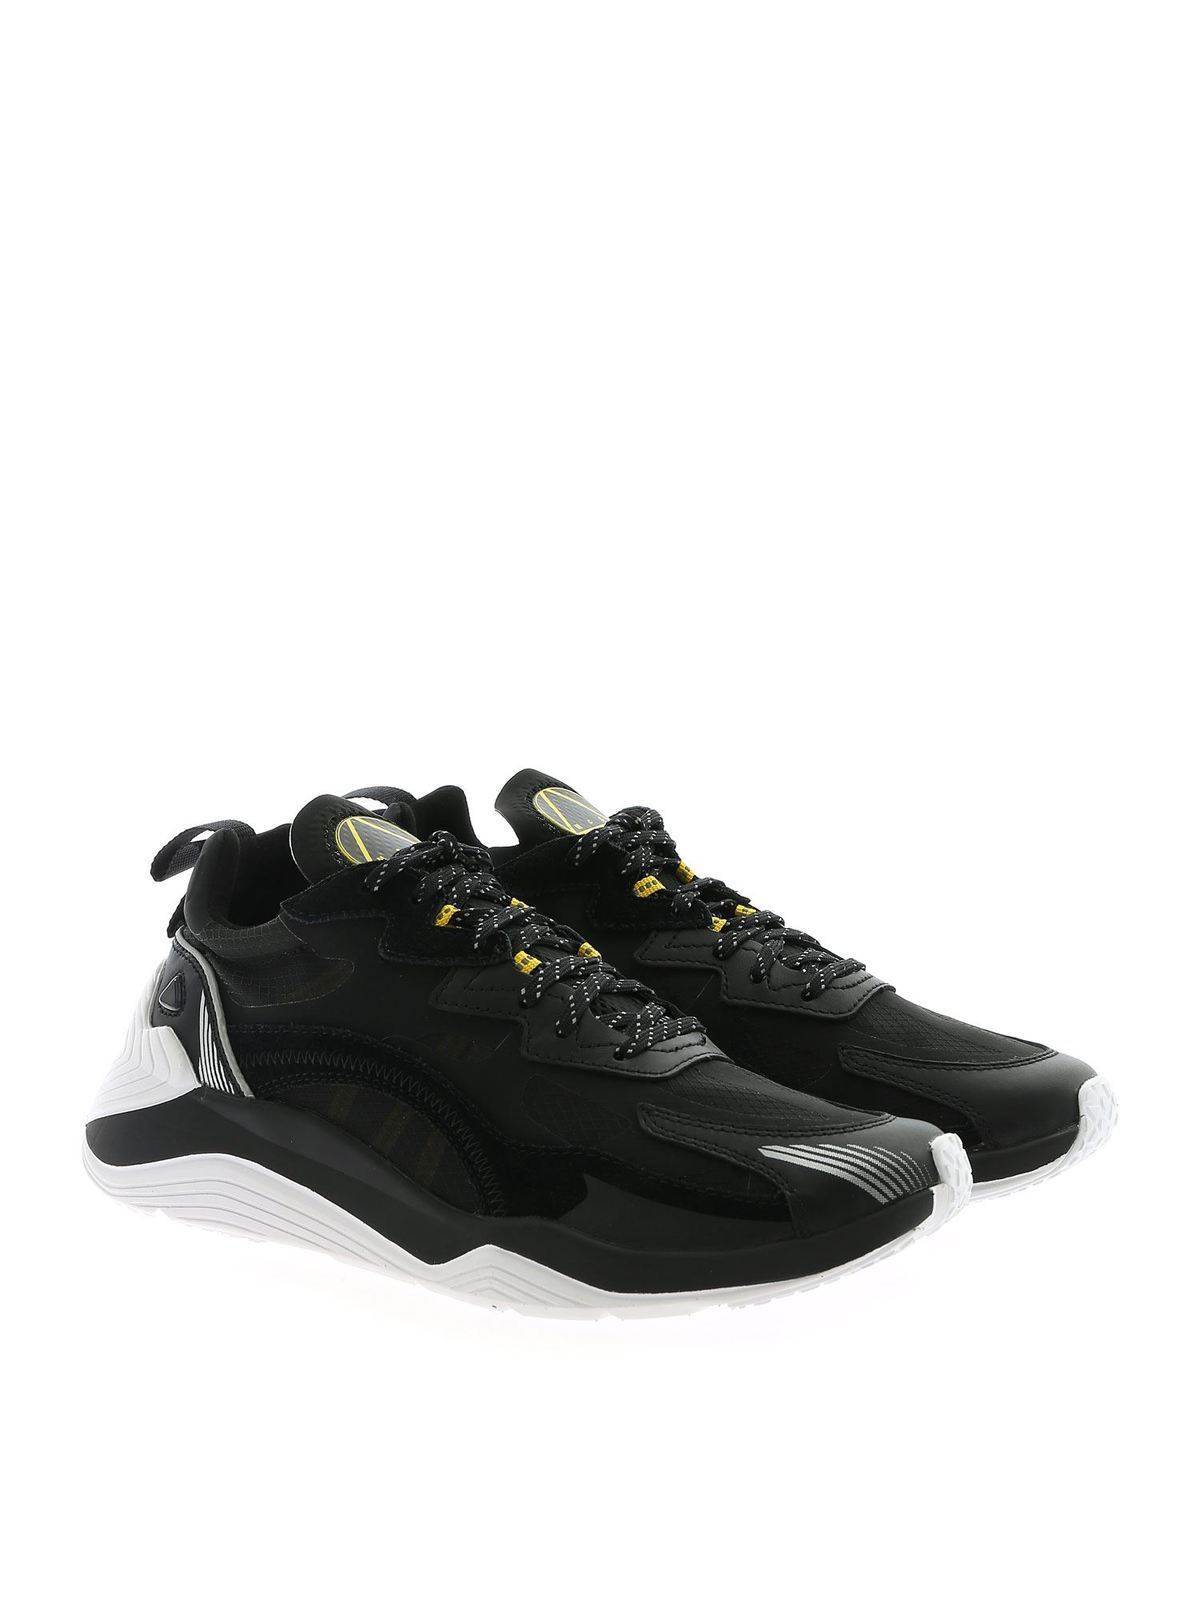 McQ Alexander Mcqueen - Daku 2.0 sneakers black - 598104R26161072